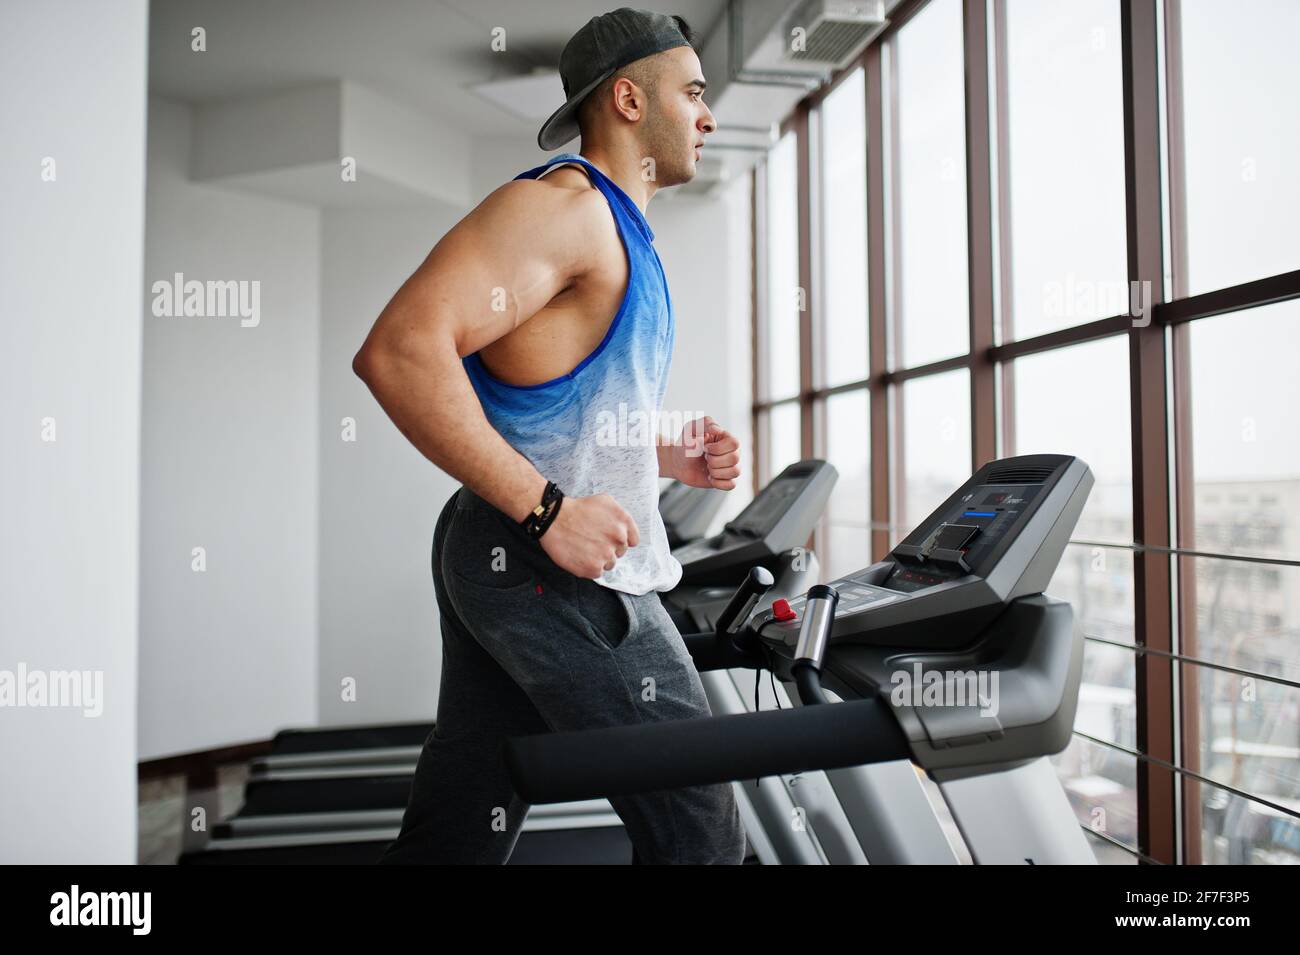 Forme et musclé homme arabe courant sur un tapis roulant dans la salle de  gym Photo Stock - Alamy